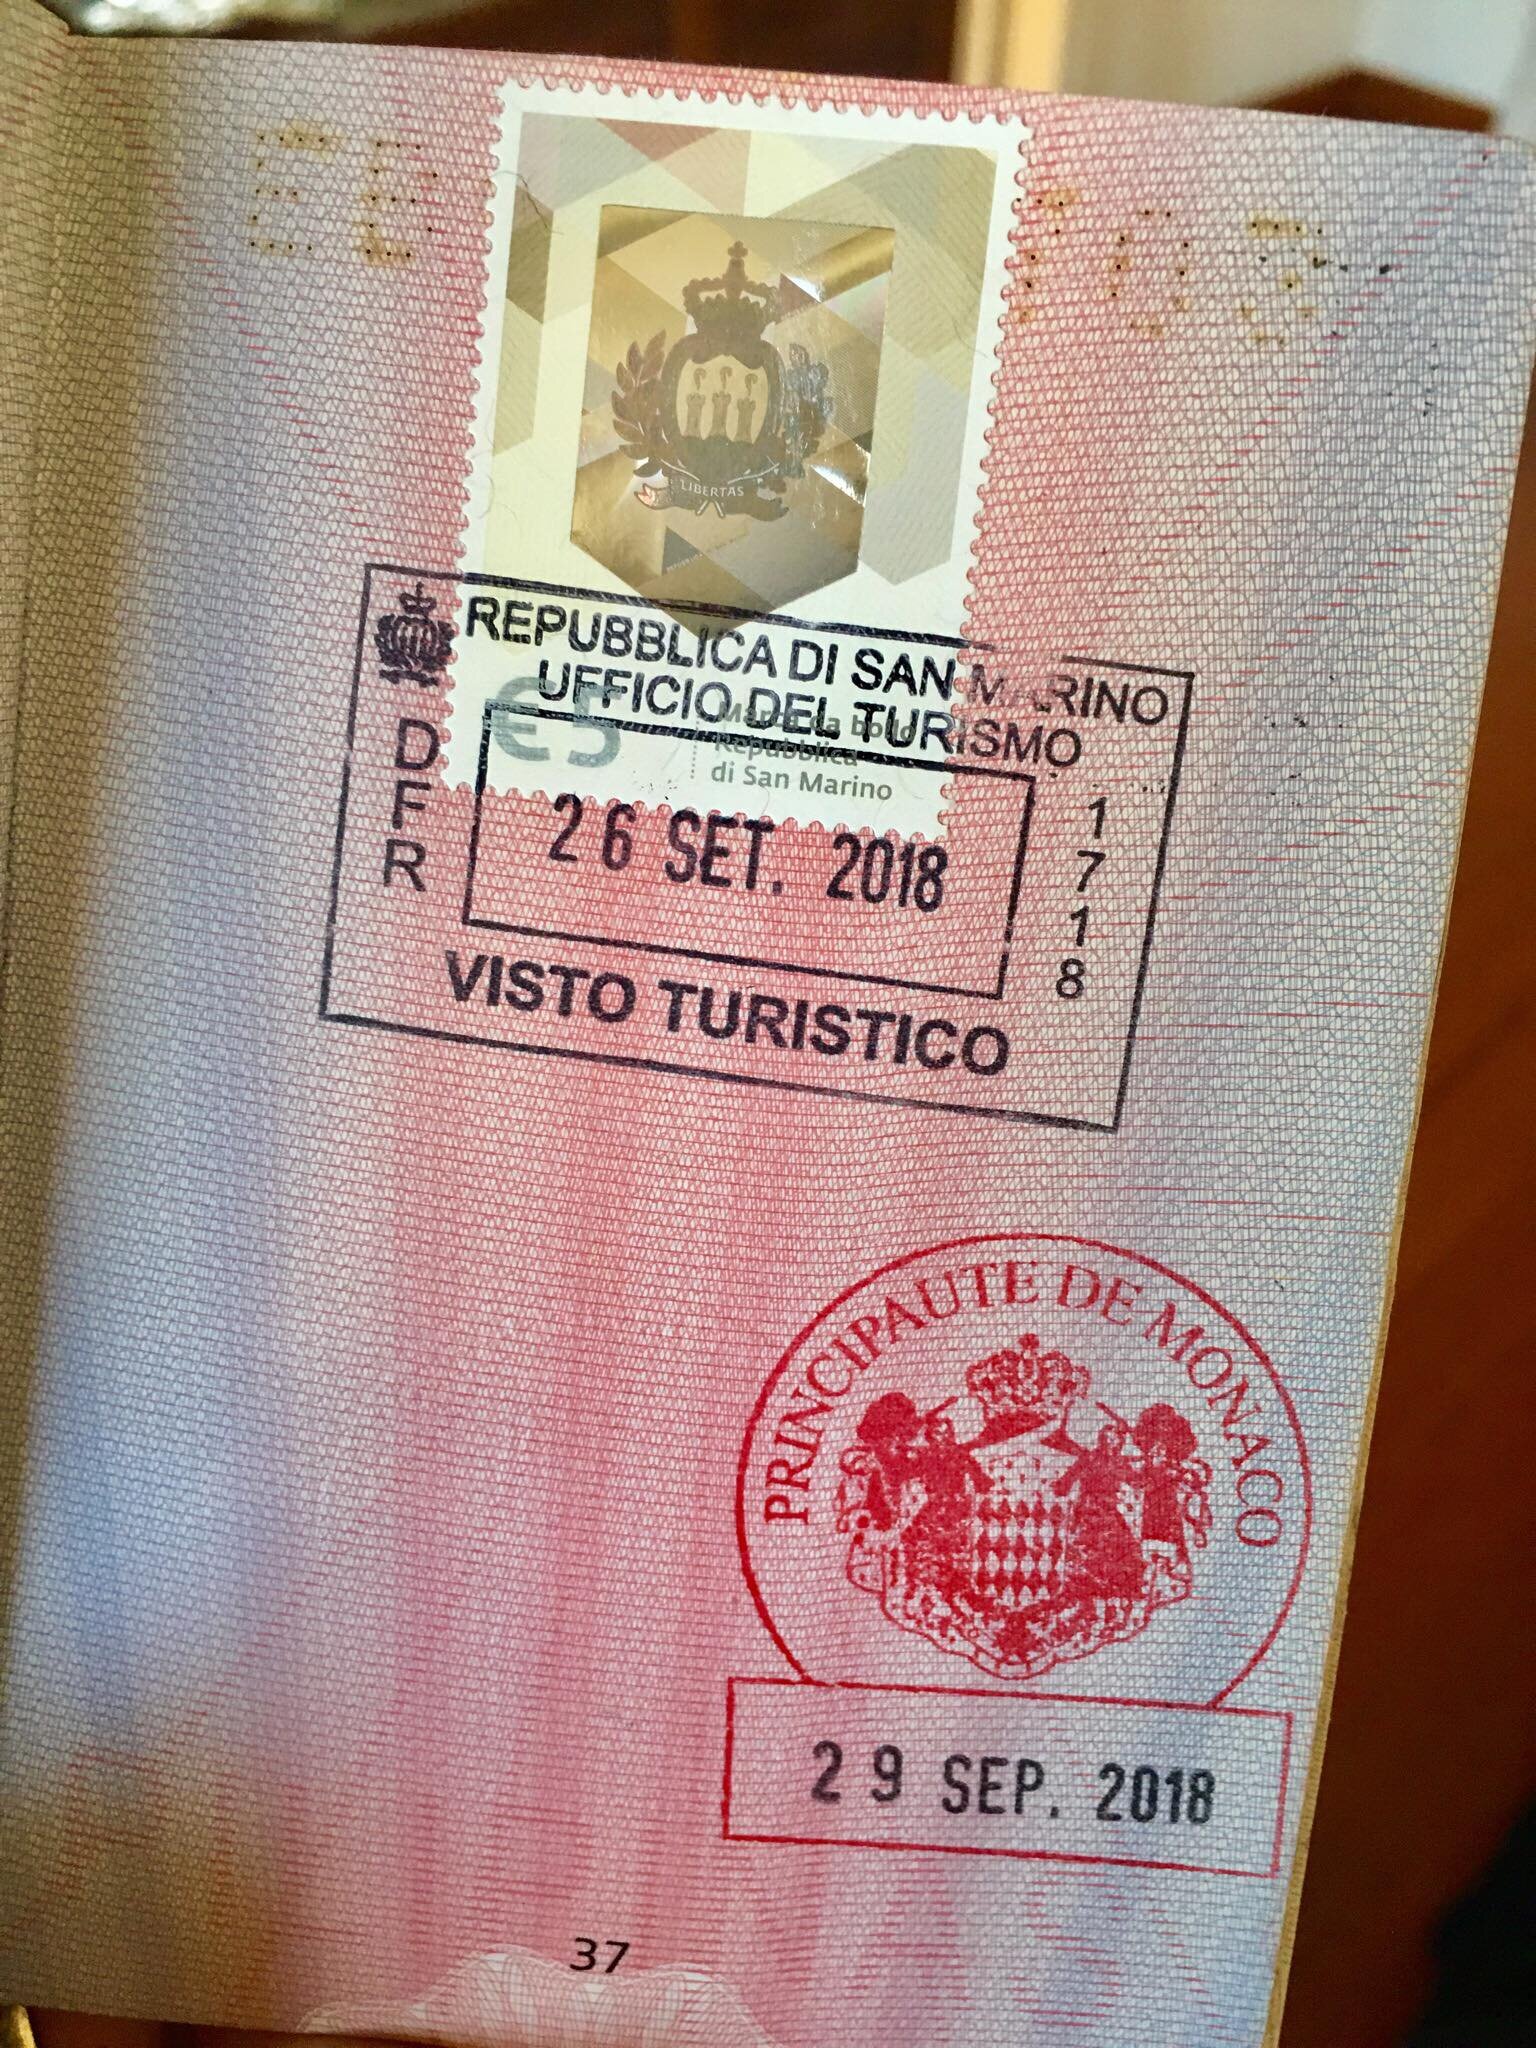 Tourist Visa Guide For Monaco4.jpg